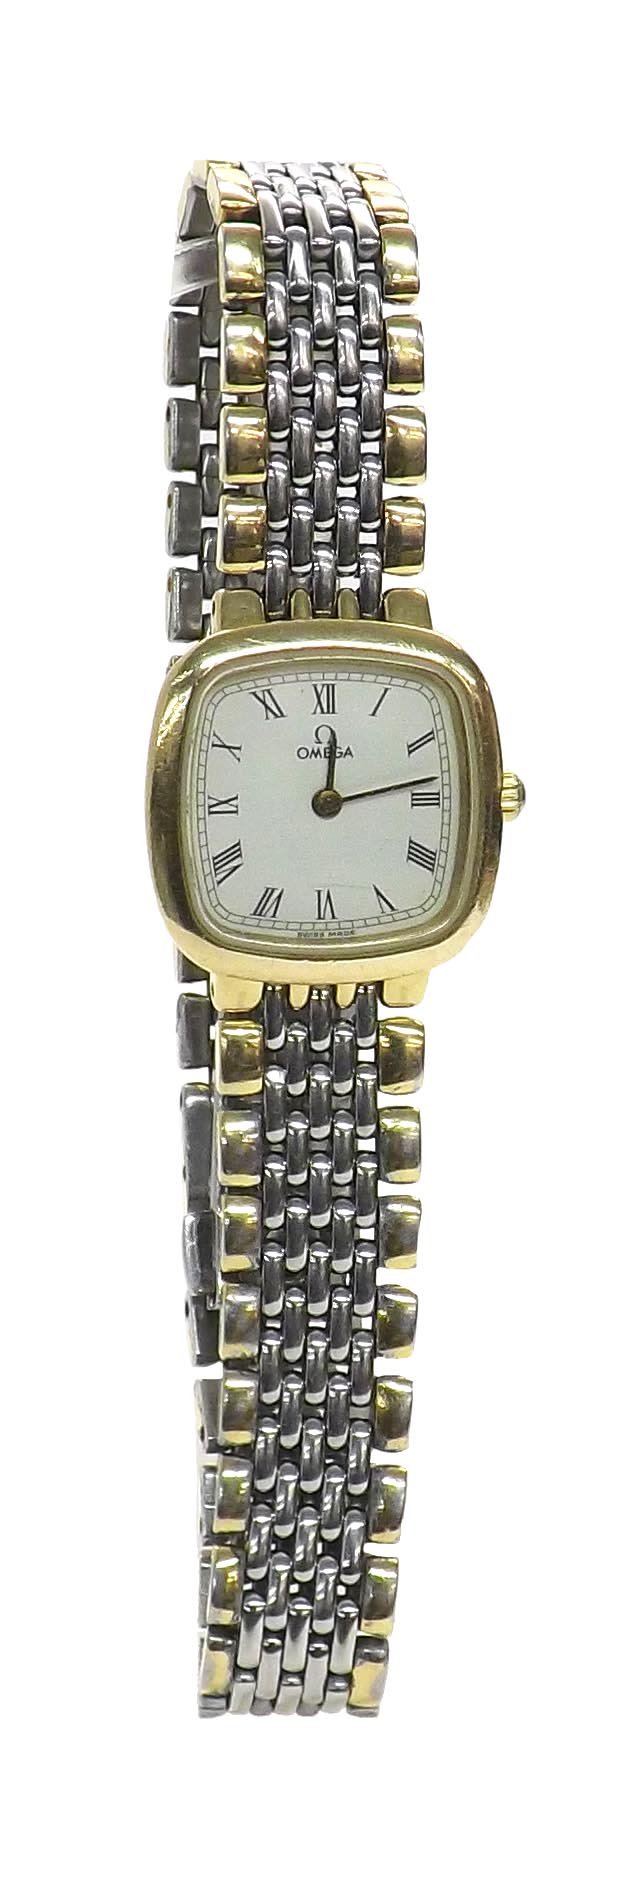 (UAHWB) Omega De Ville two-tone lady's quartz bracelet watch, no. 53761623, 21mm